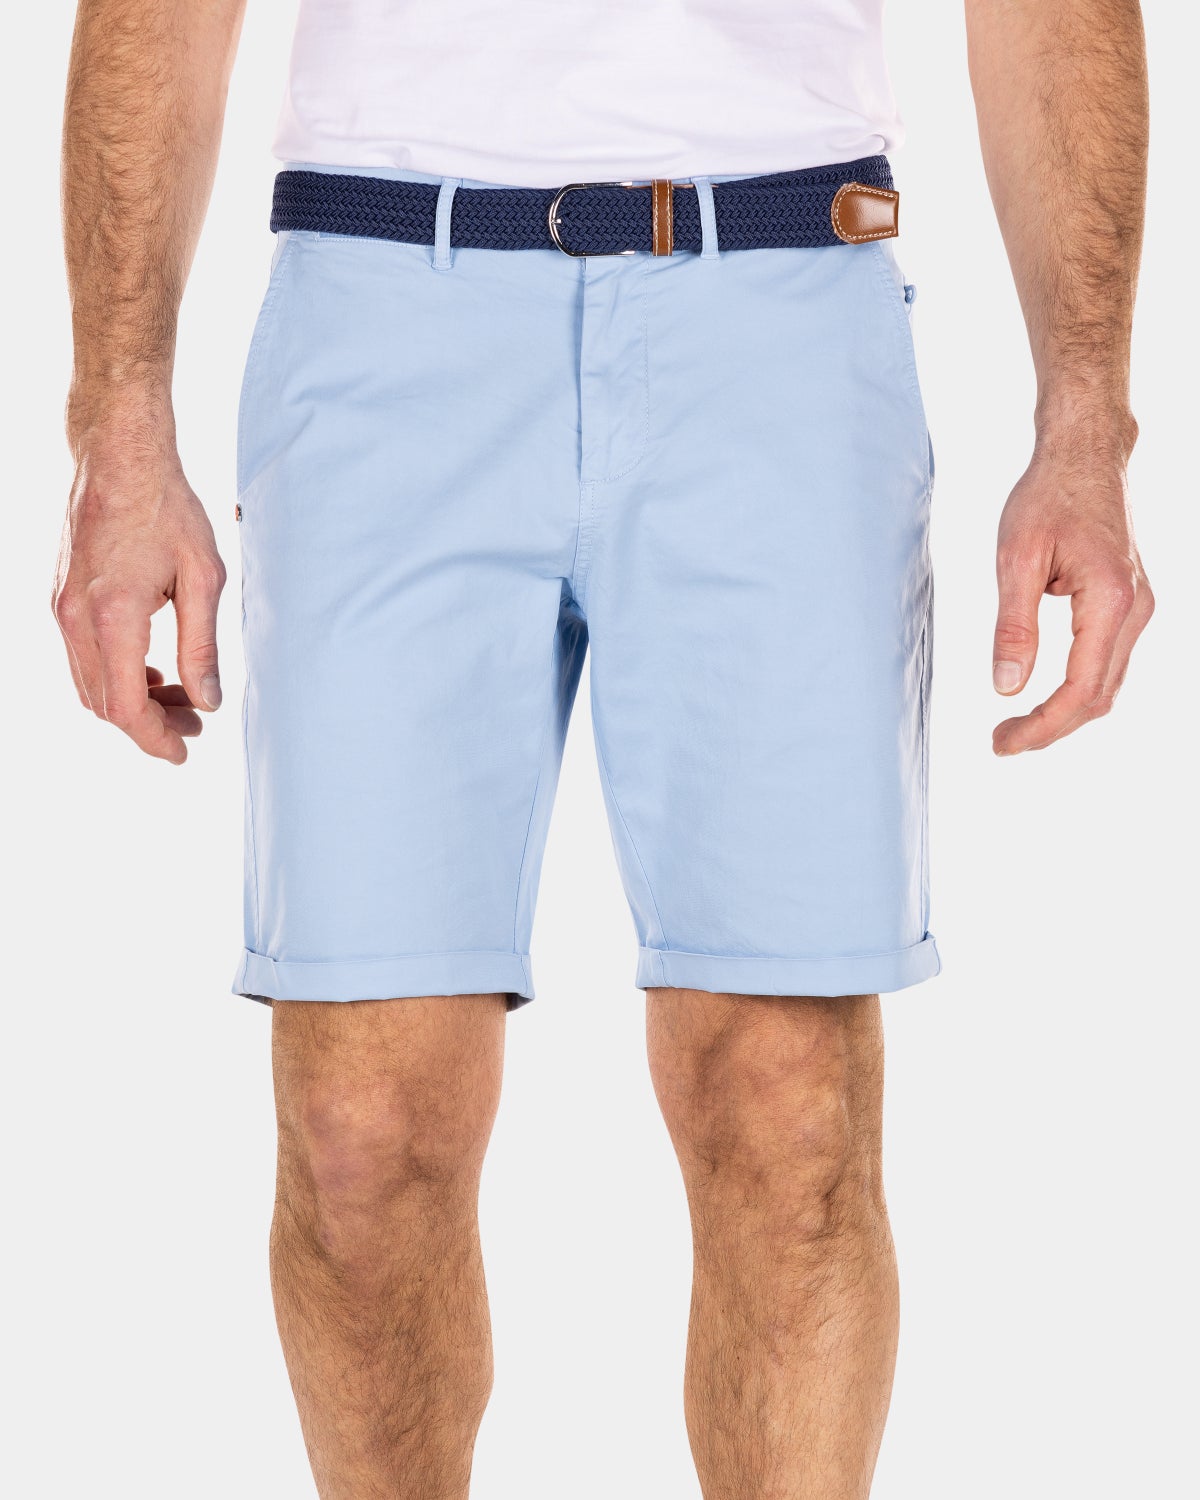 Cotton chino shorts - Universal Blue